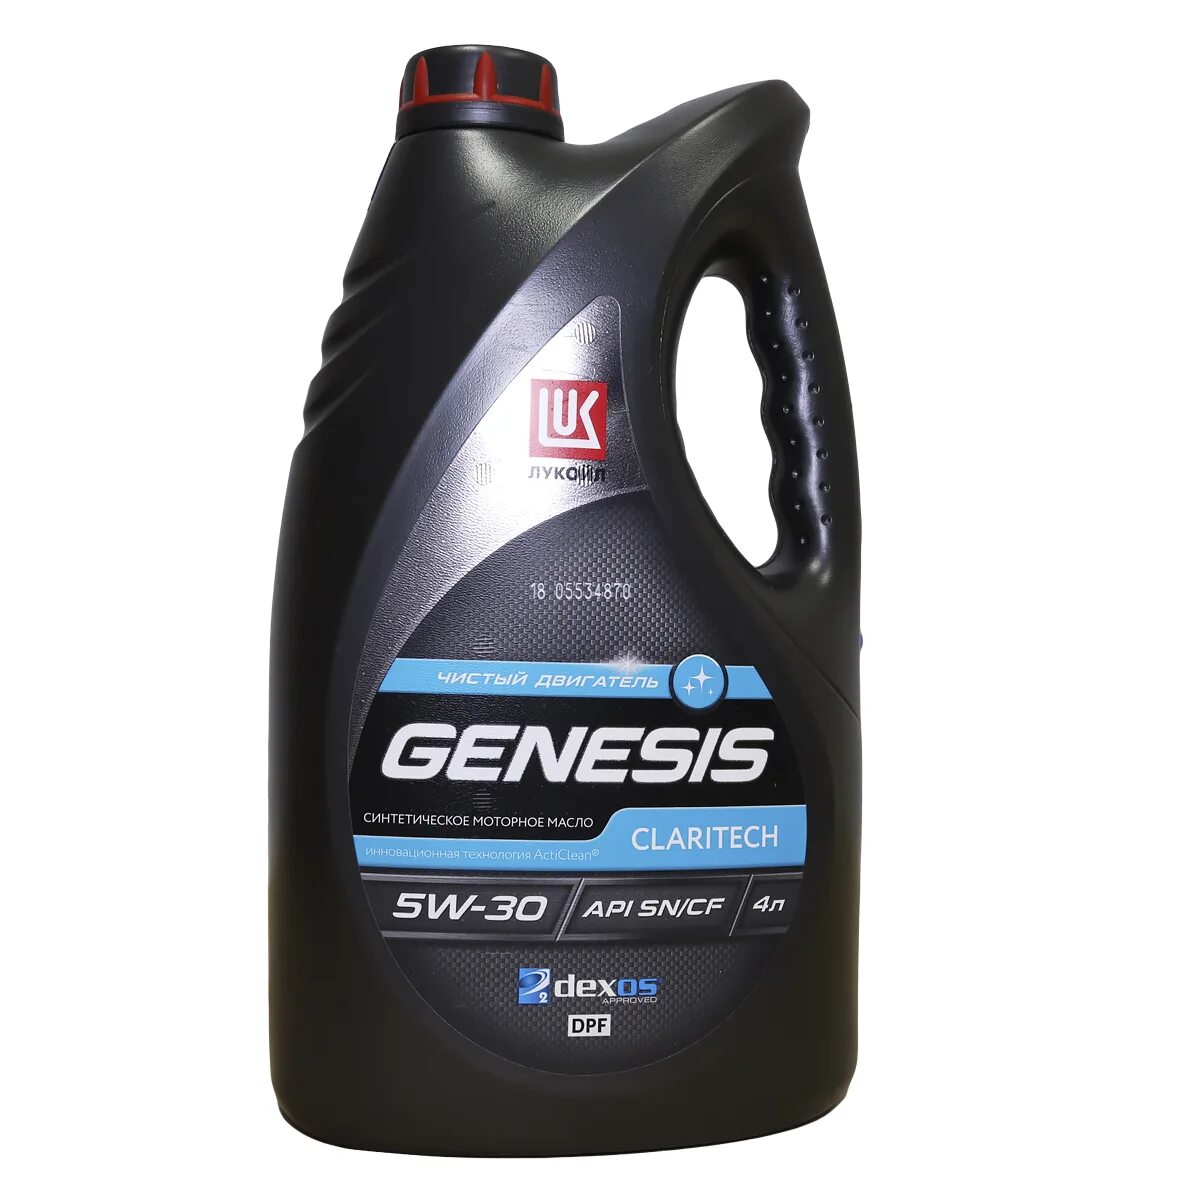 5w 30 полусинтетическое масло. Lukoil Genesis 5w30. Lukoil Genesis Claritech 5w-30. Genesis Armortech 5w-30. Lukoil Genesis 5w30 Genesis.